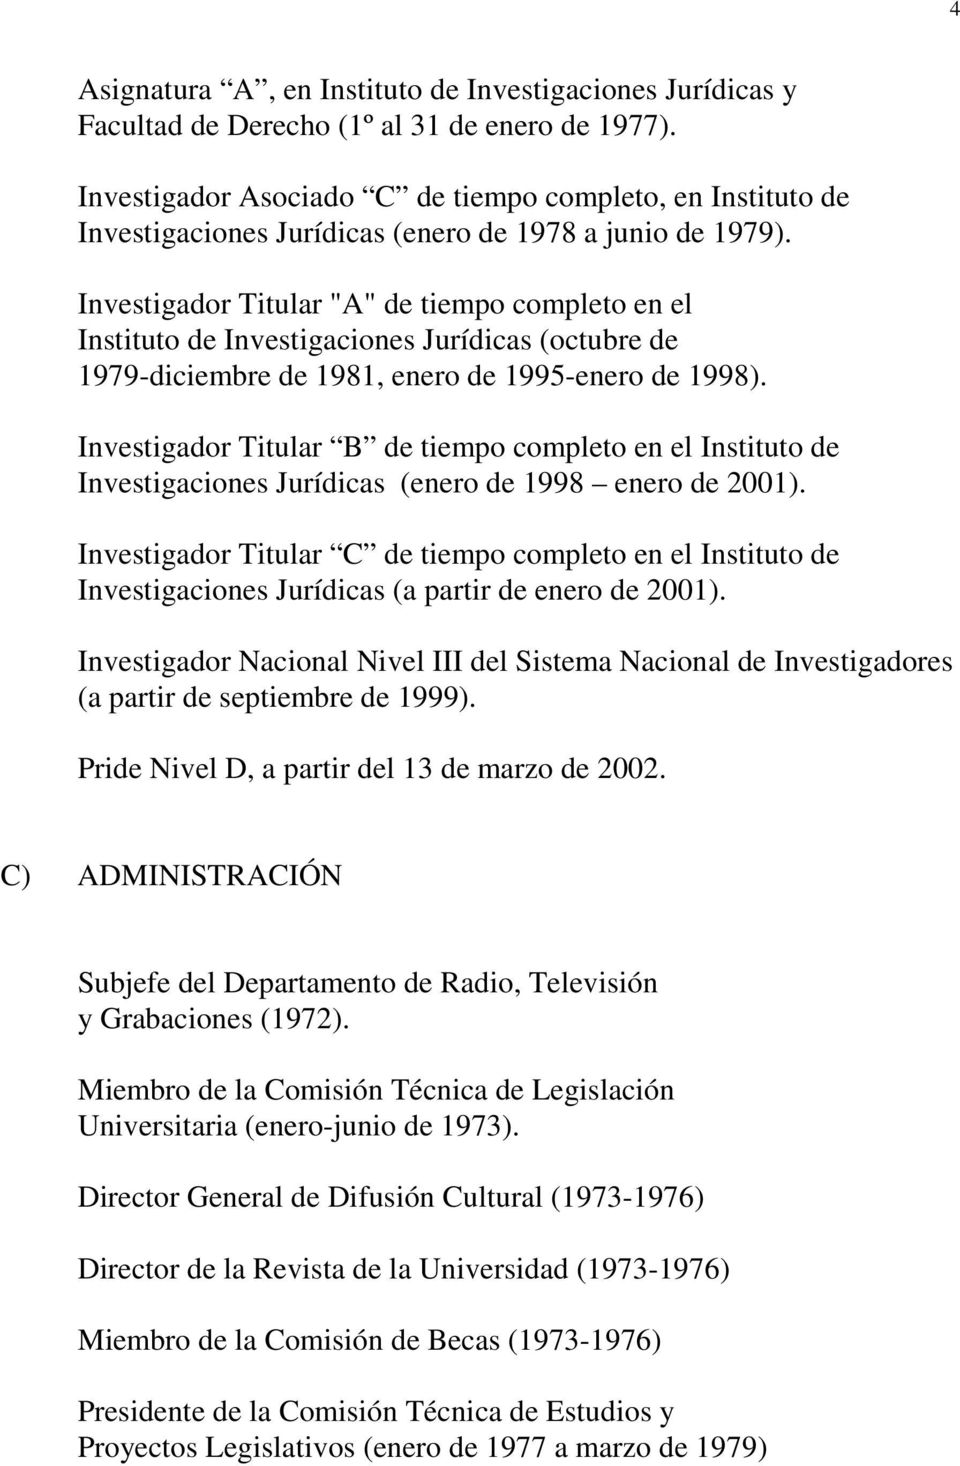 Investigador Titular "A" de tiempo completo en el Instituto de Investigaciones Jurídicas (octubre de 1979-diciembre de 1981, enero de 1995-enero de 1998).